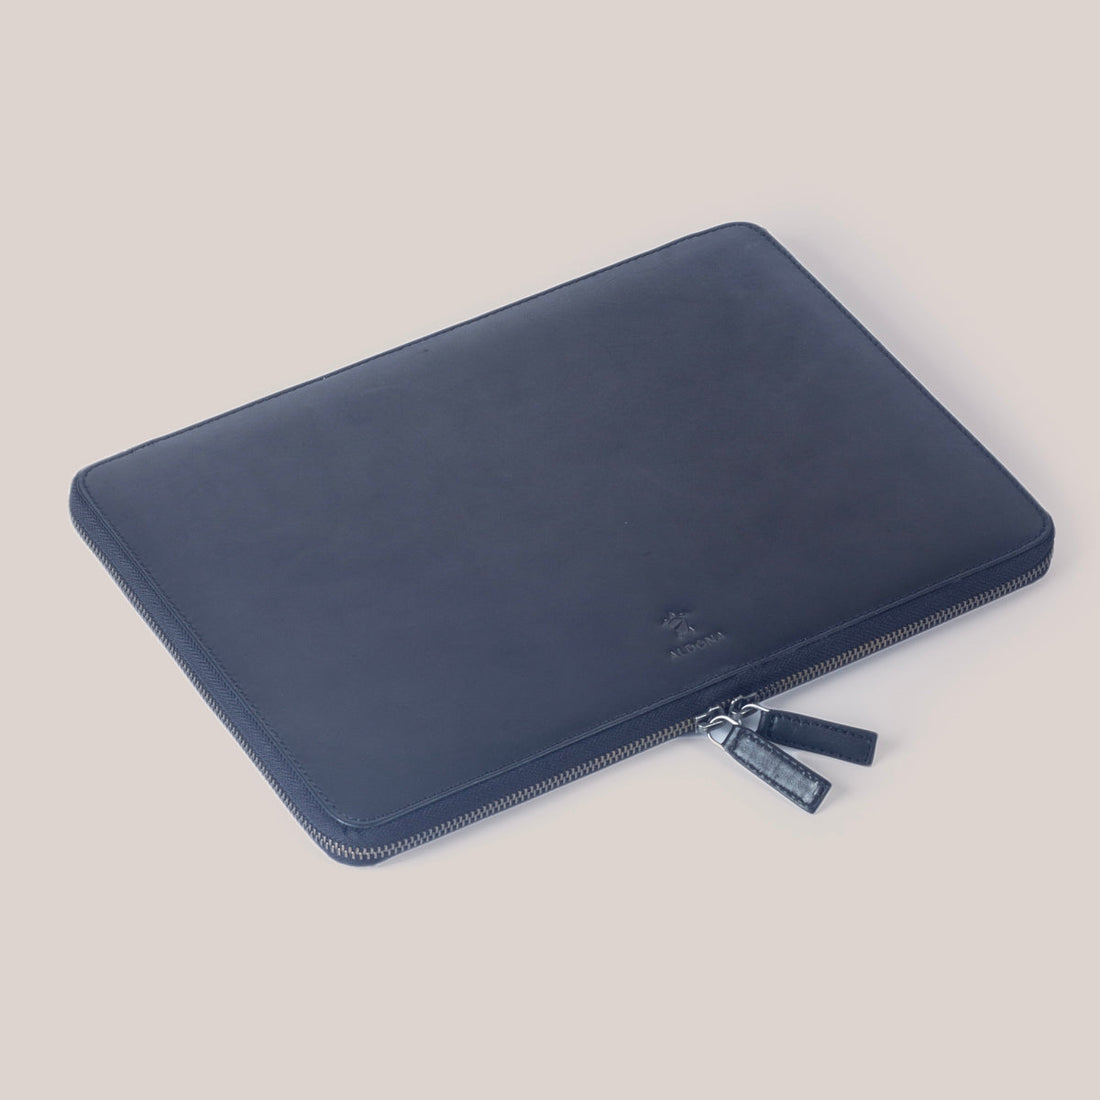 MacBook Air 13 Zippered Laptop Case - Felt and Tan Crunch